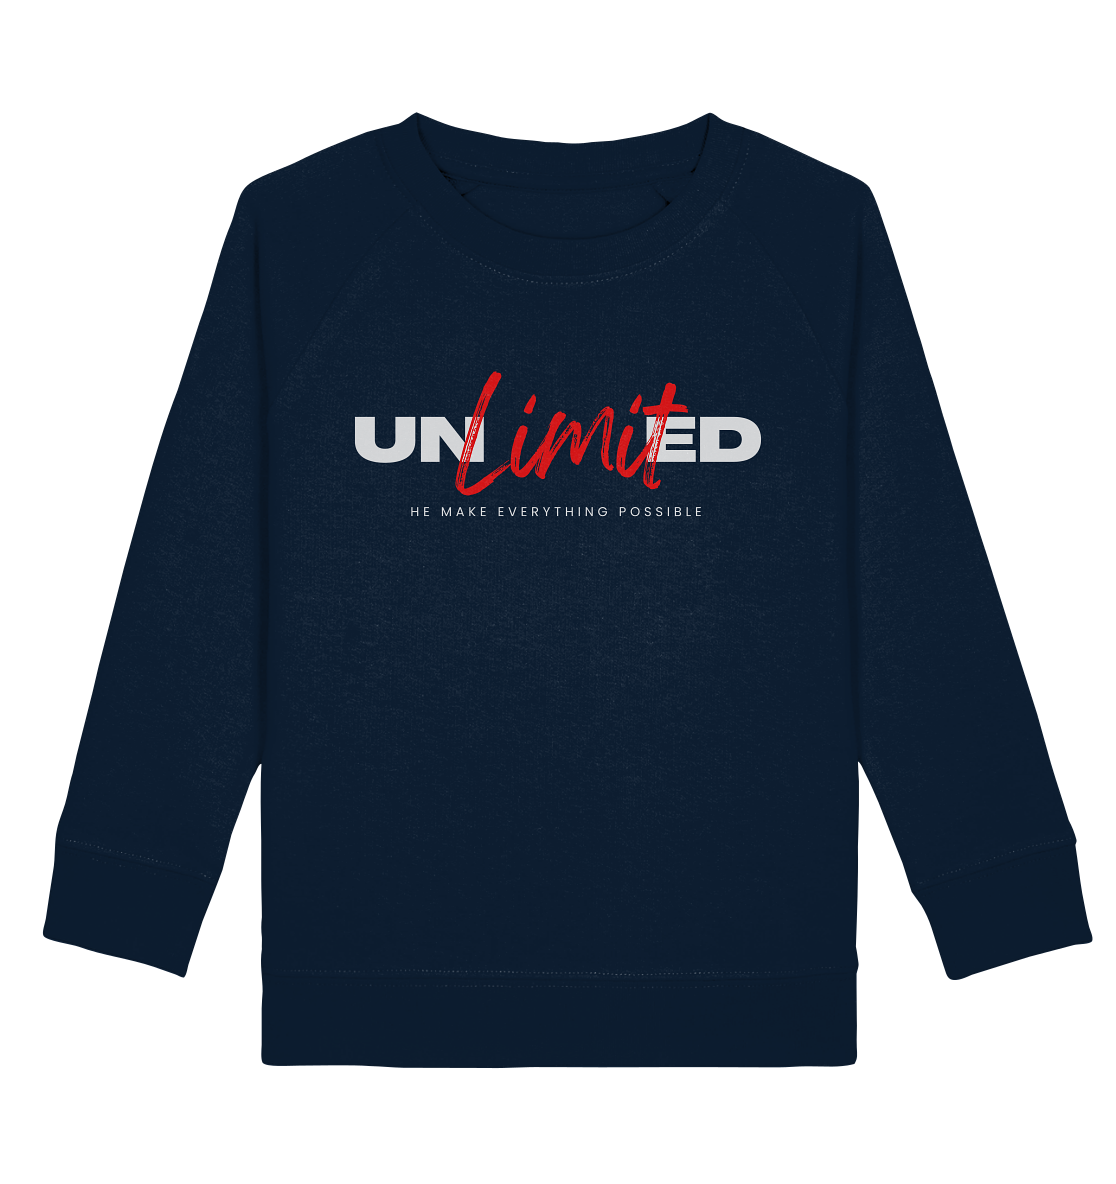 Unbegrenzte Möglichkeiten "Unlimited" - Kids Organic Sweatshirt